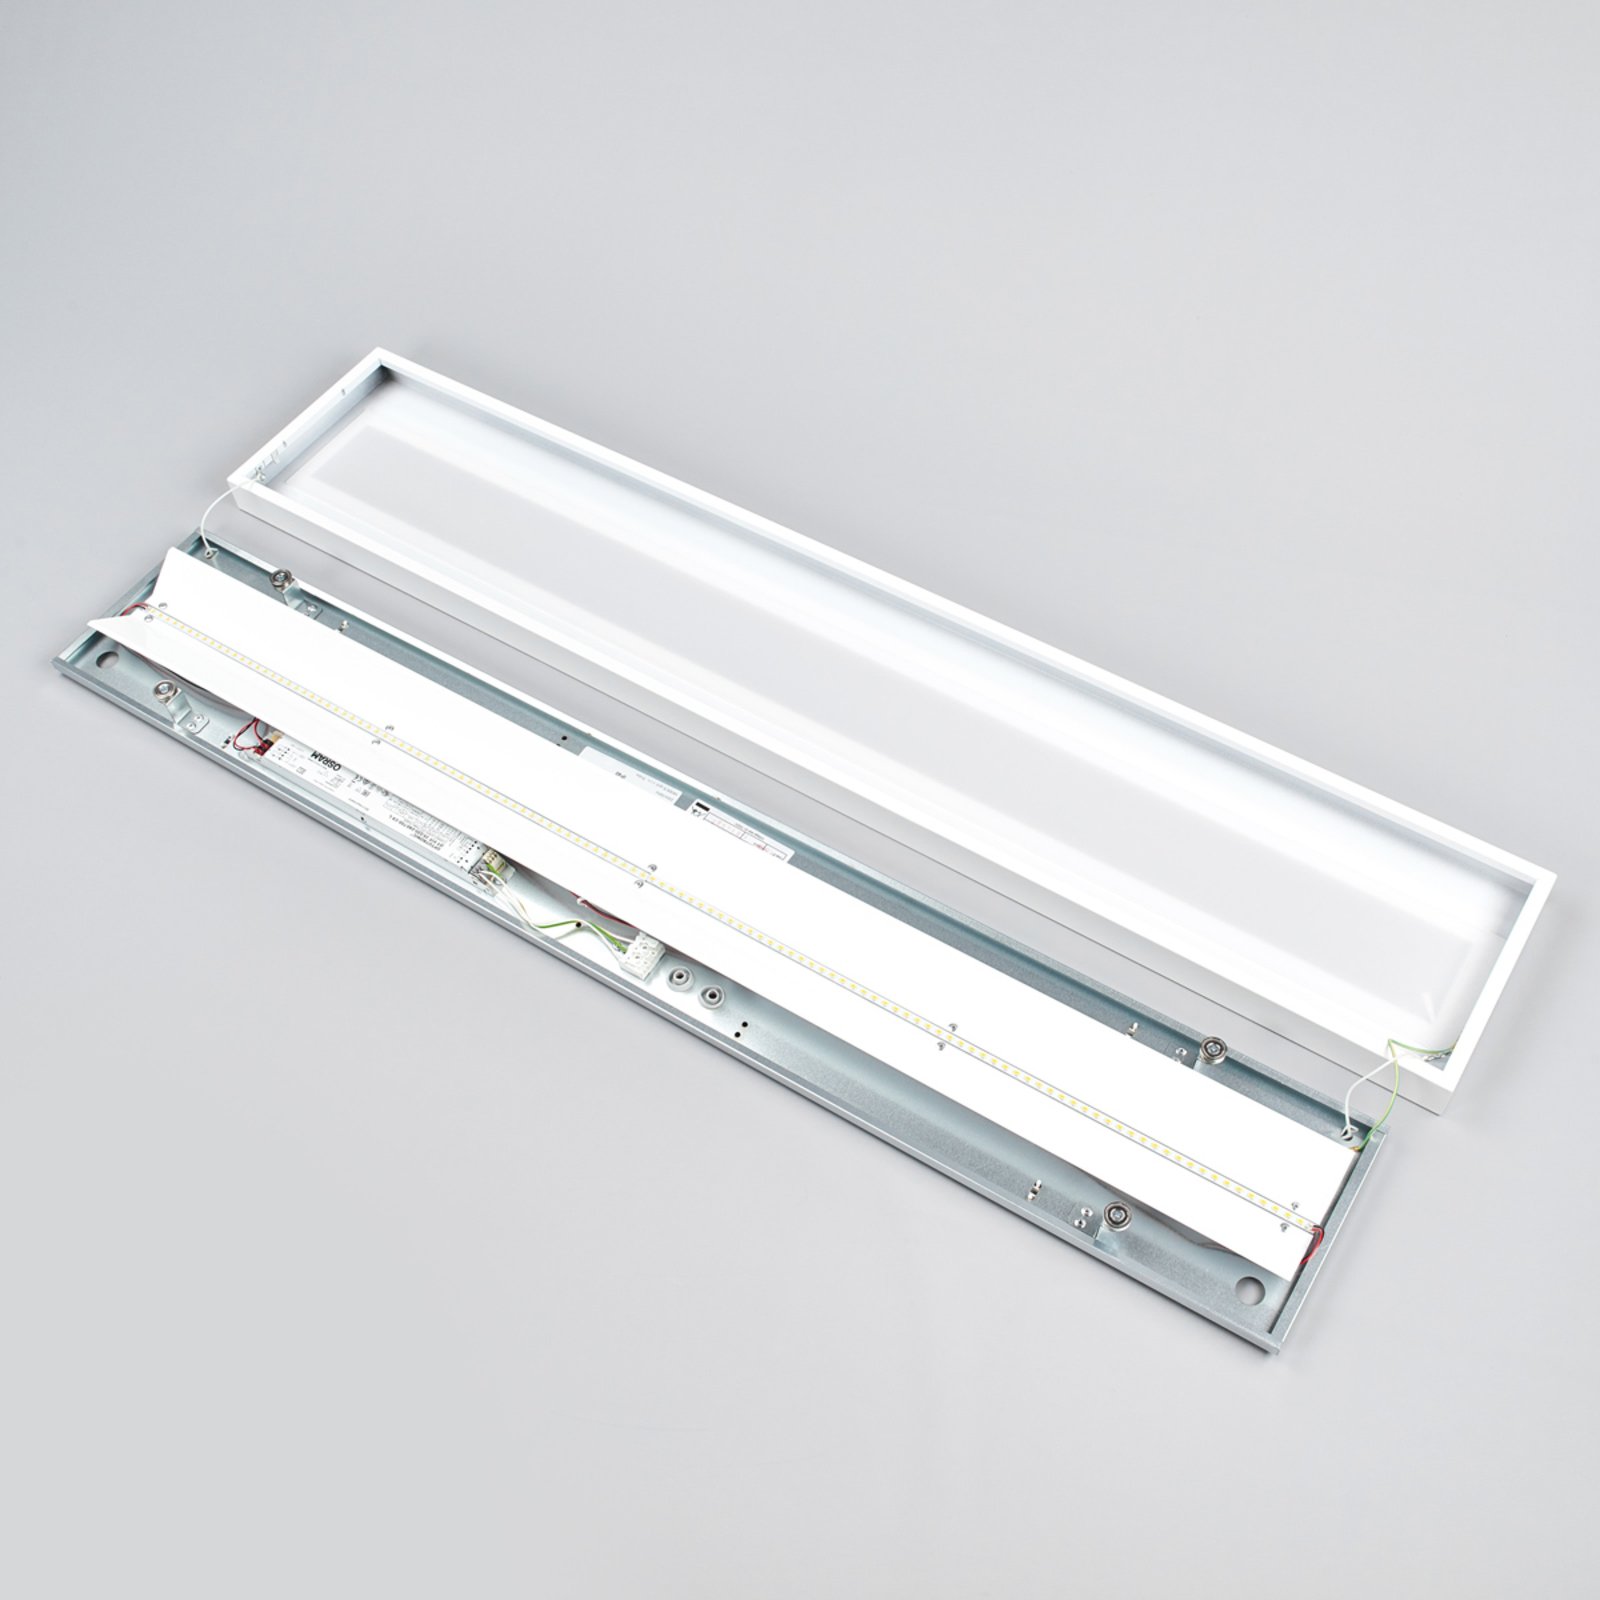 Längliche LED-Anbauleuchte 120 cm weiß, BAP